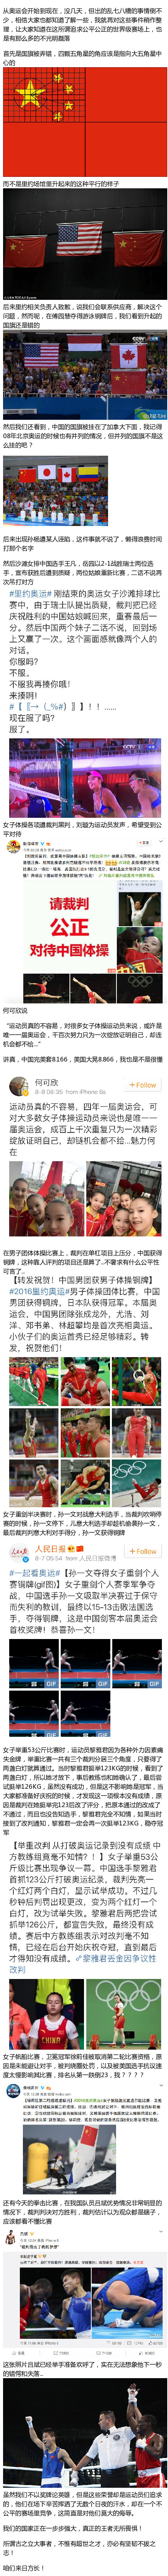 2016里约奥运会黑幕盘点汇总  中国选手遭遇不公正待遇事件盘点